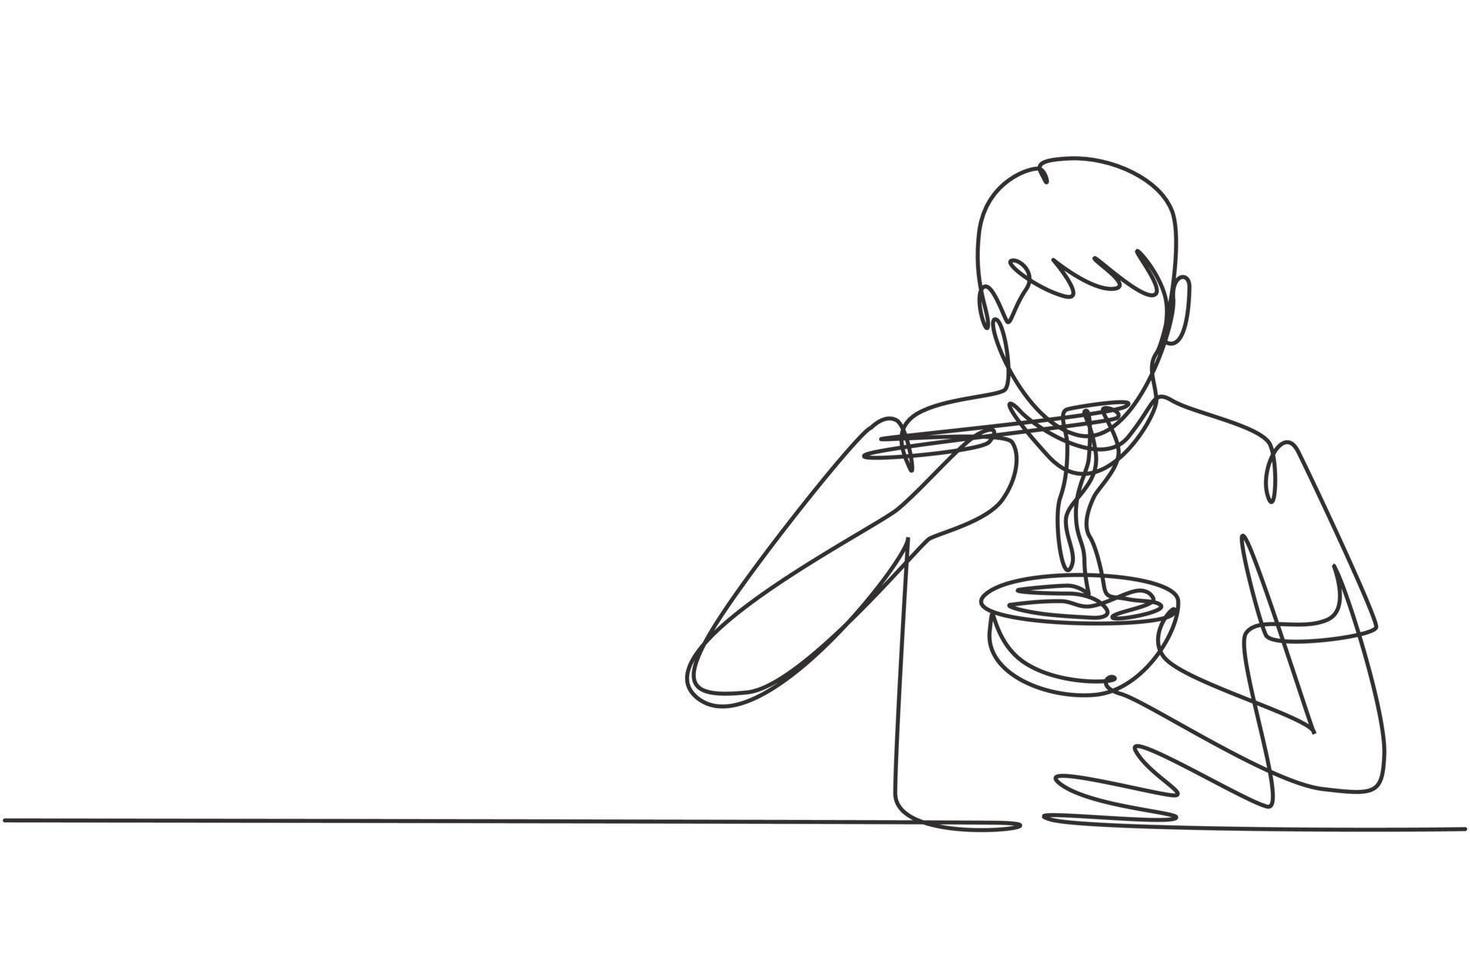 singolo disegno a linea continua giovane che mangia noodles pasto con le bacchette intorno al tavolo. goditi il pranzo quando hai fame. cibo delizioso e sano. illustrazione vettoriale di disegno grafico di disegno grafico di una linea dinamica